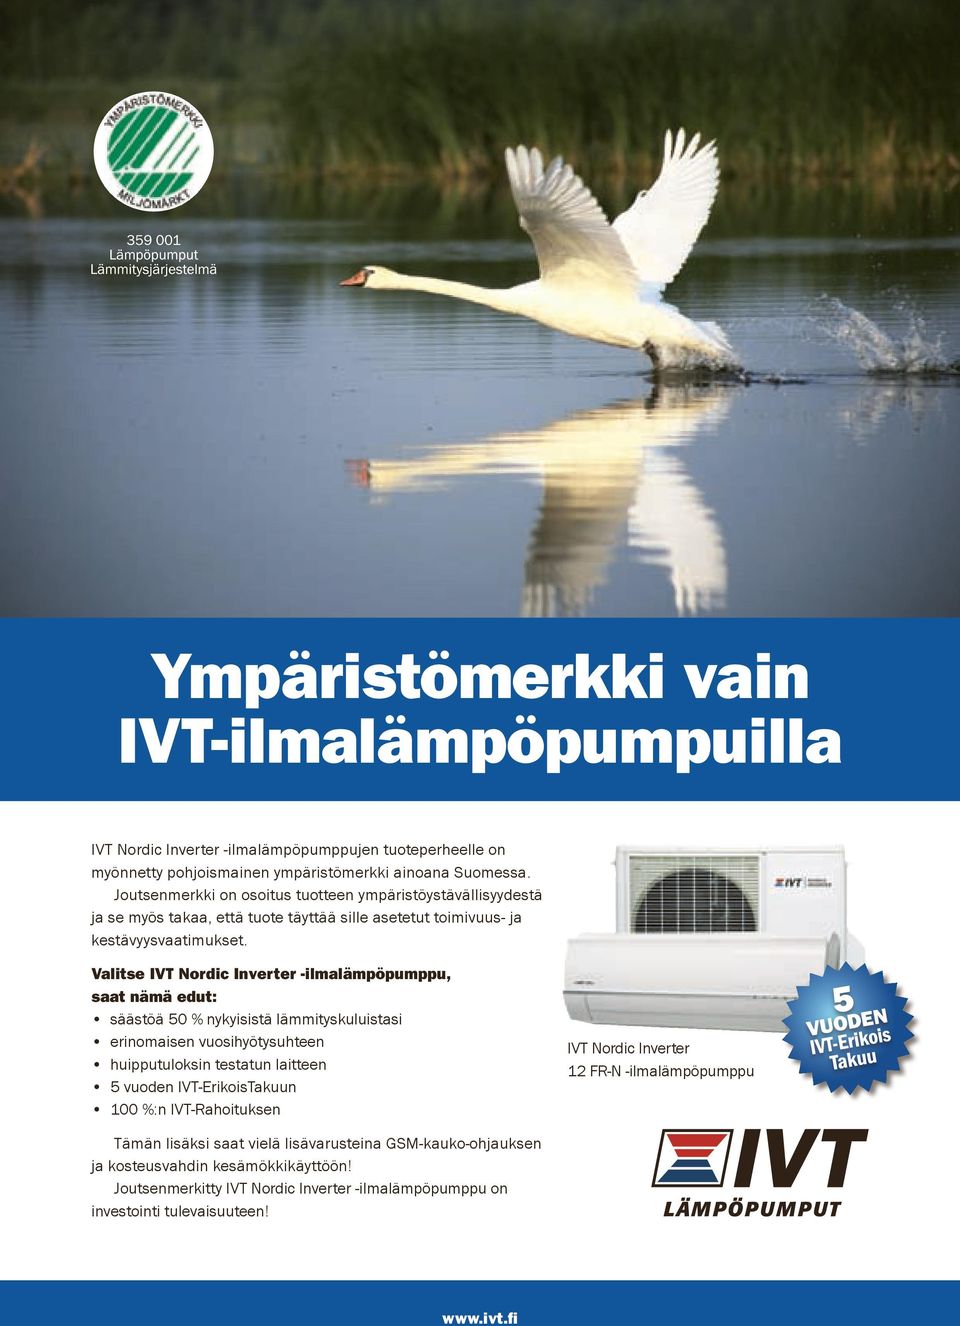 Valitse IVT Nordic Inverter -ilmalämpöpumppu, saat nämä edut: säästöä 50 % nykyisistä lämmityskuluistasi erinomaisen vuosihyötysuhteen huipputuloksin testatun laitteen 5 vuoden